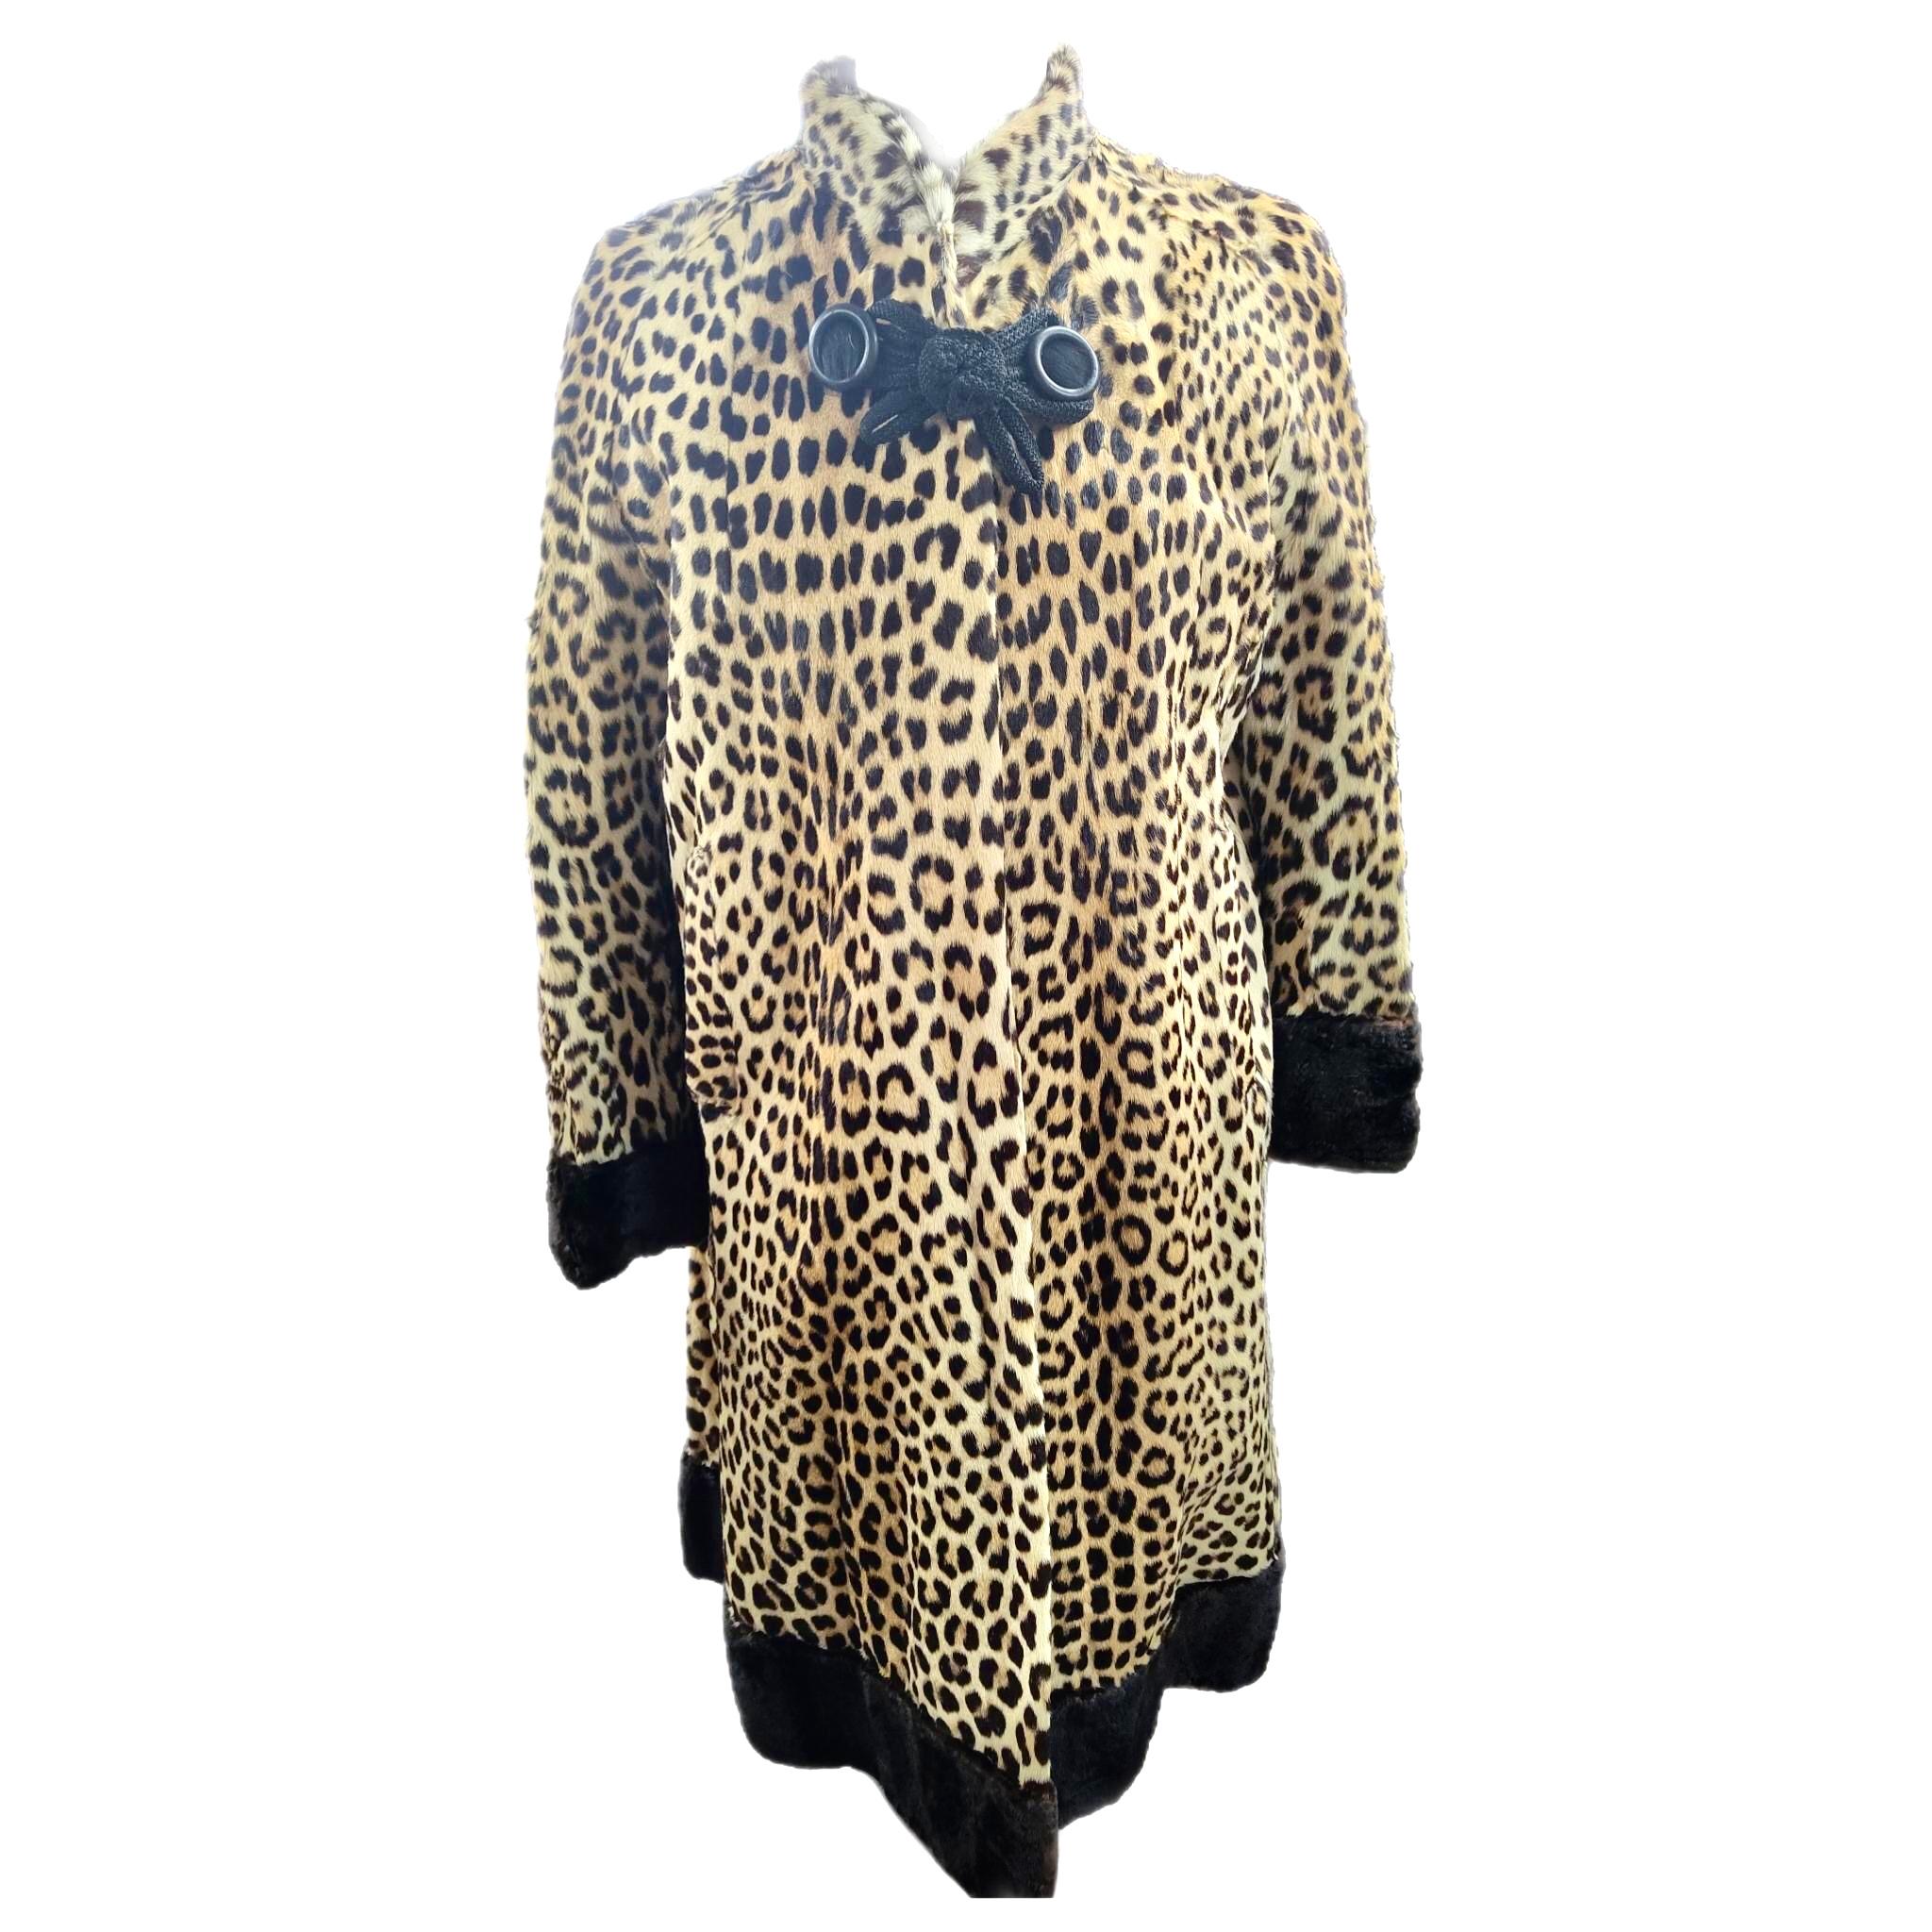 BESCHREIBUNG DES PRODUKTS:

Vintage Leopard Pelzmantel Größe 10

Ein absolut brillantes Stück Geschichte, ein seltenes exotisches, farbenfrohes echtes Leopardenfell. In brandneuem Zustand wurde nie getragen. unbenutztes Futter. Einwandfreie,